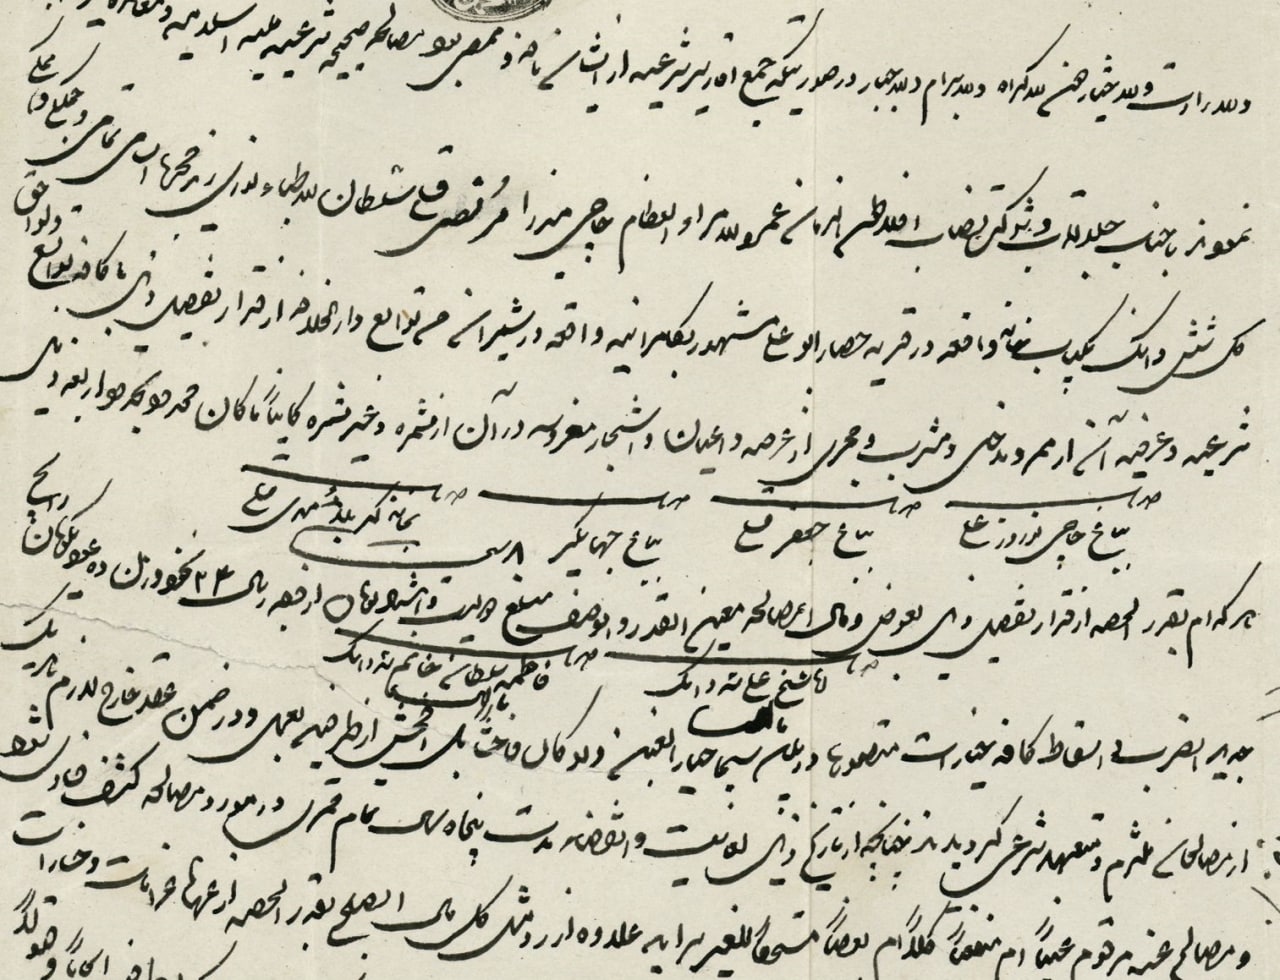 قیمت برده و کنیز در دوران قاجار؛ بر اساس اسناد تاریخی (+عکس)